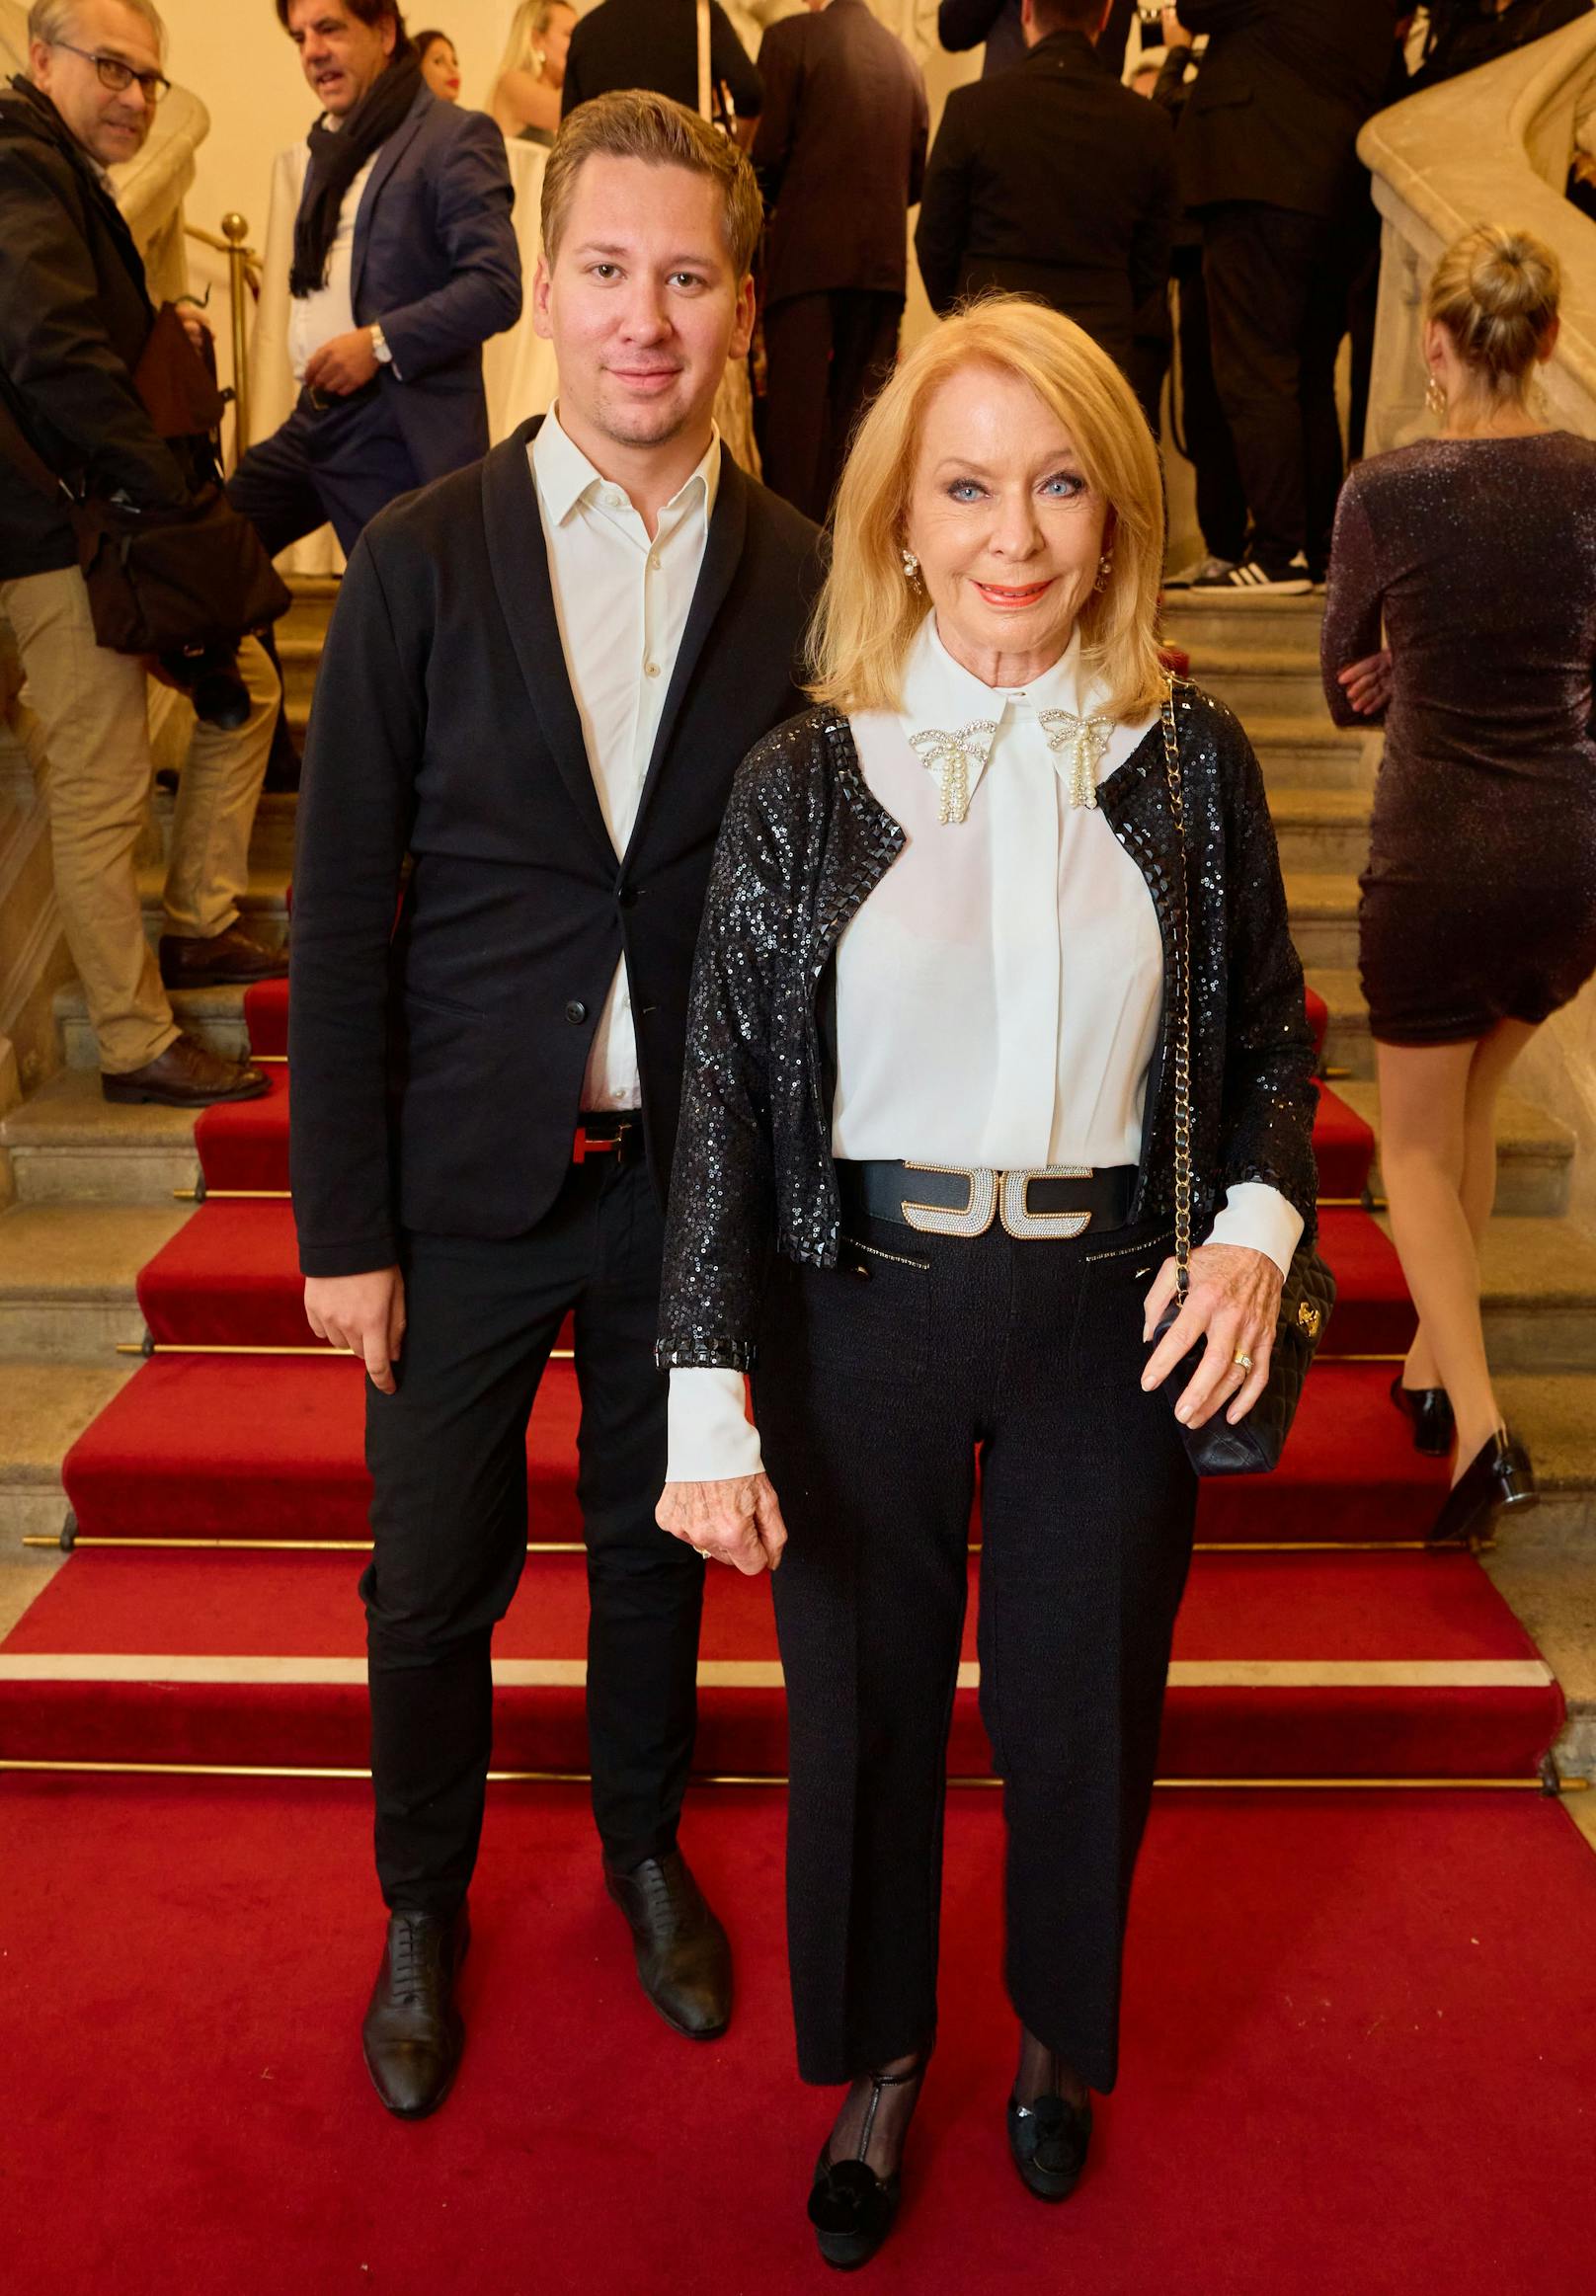 Zum Fest in der Wiener Hofburg kam Gerda Rogers mit Manager Clemens Trischler